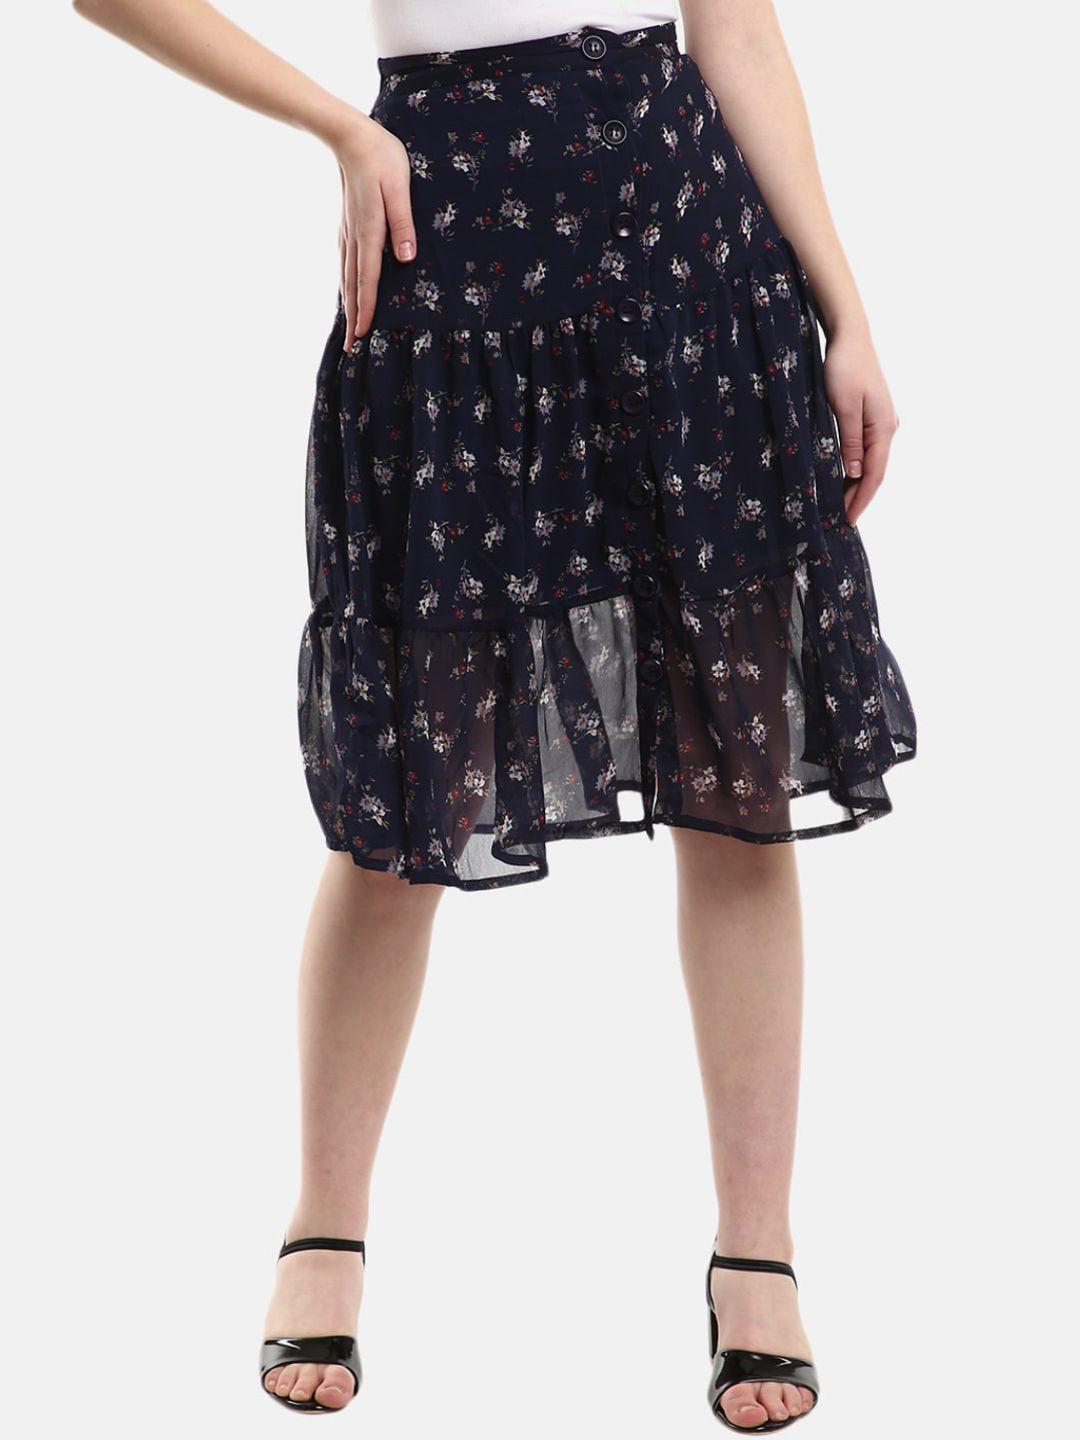 v-mart women navy blue printed georgette skirt